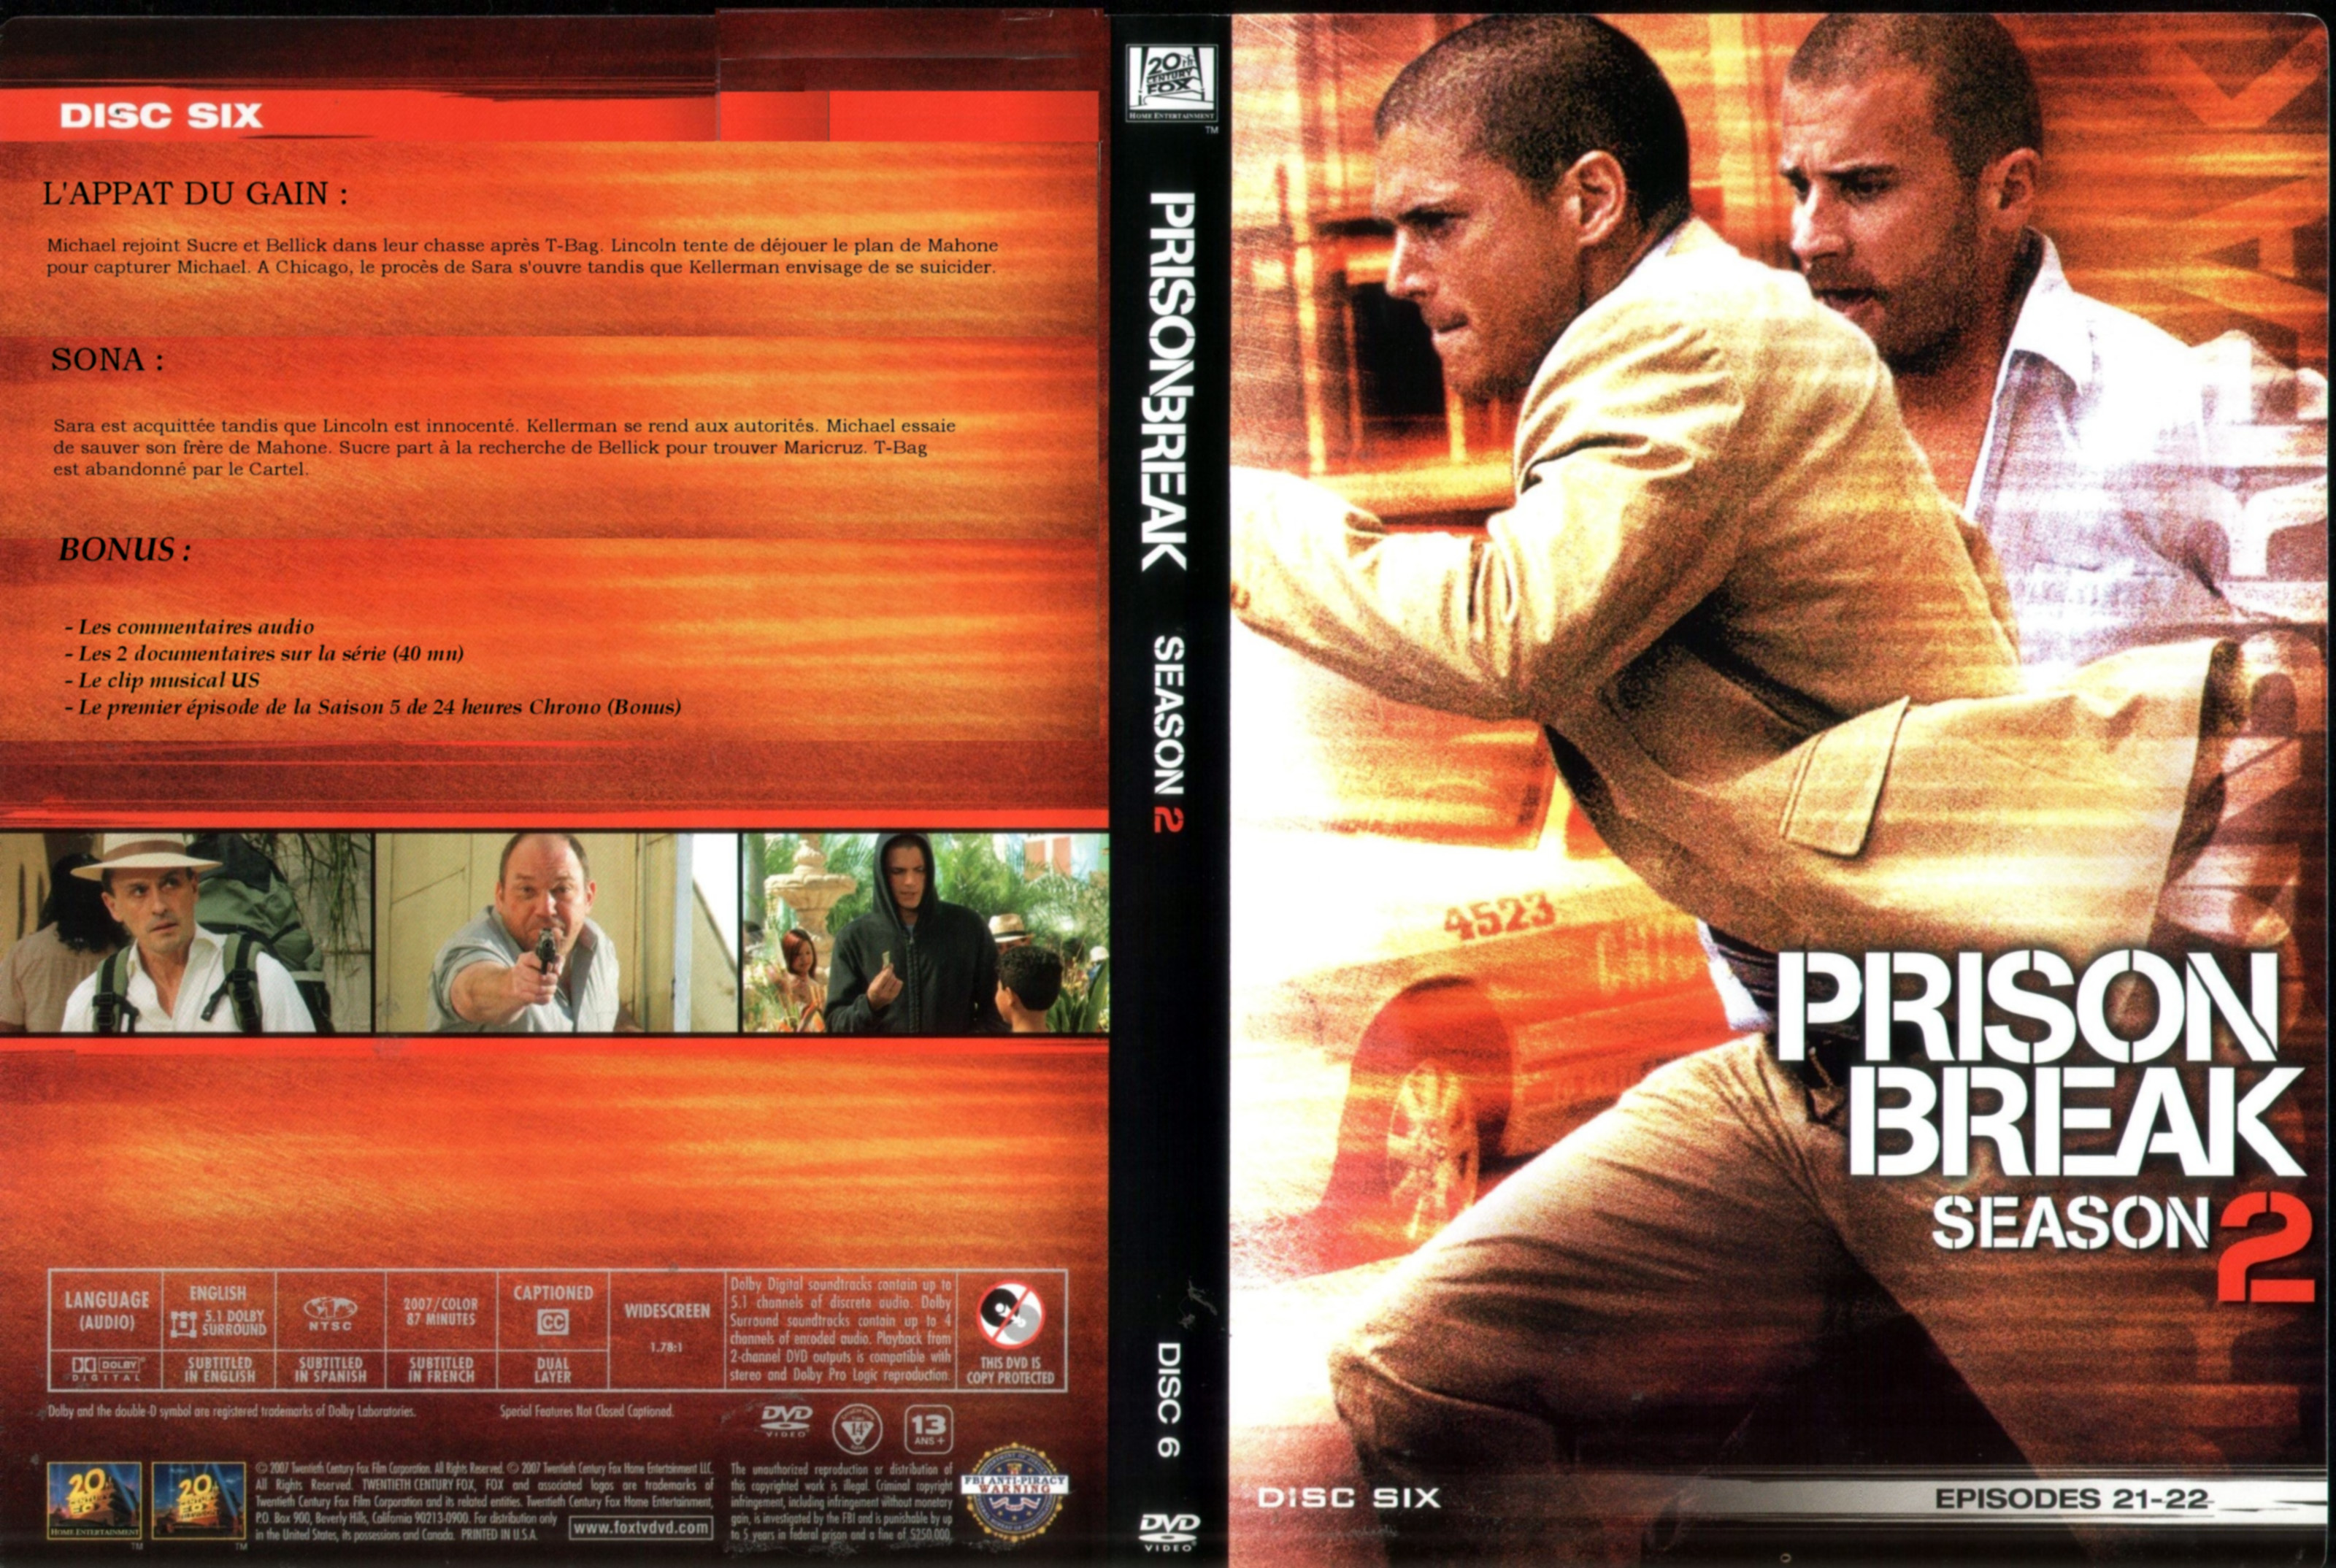 Jaquette DVD Prison break Saison 2 DVD 6